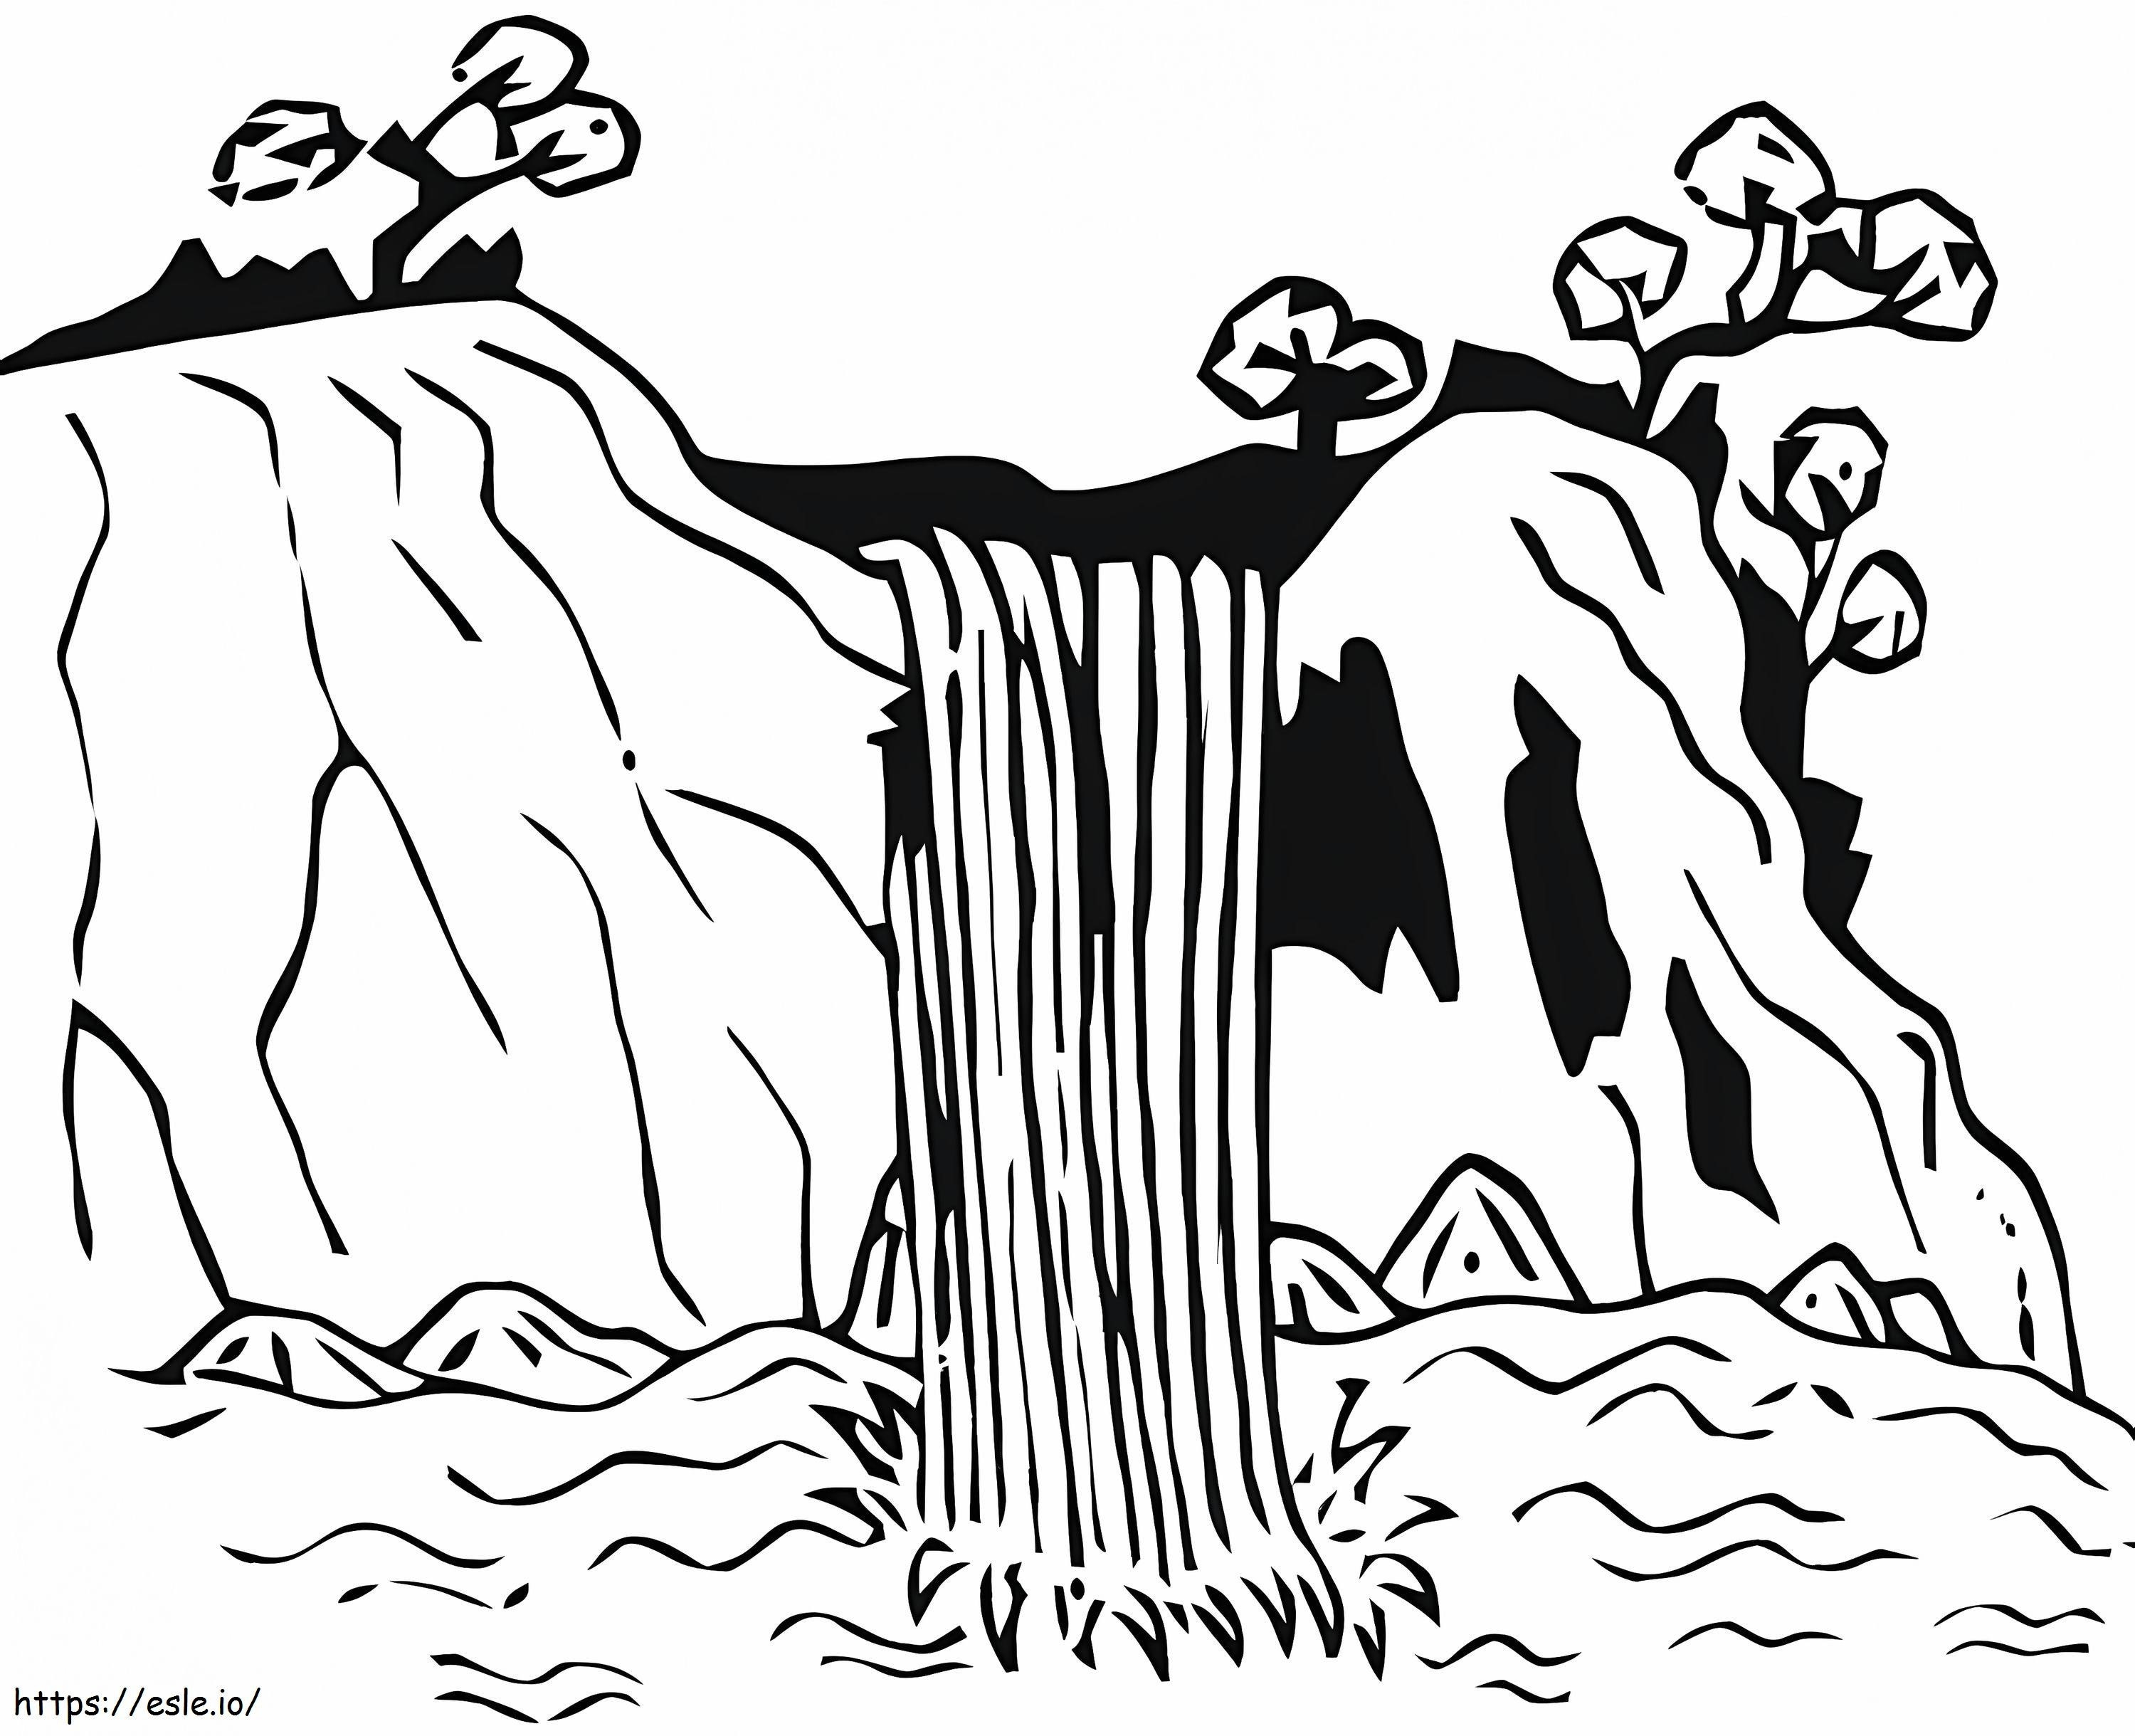 Wasserfall zum Ausdrucken ausmalbilder